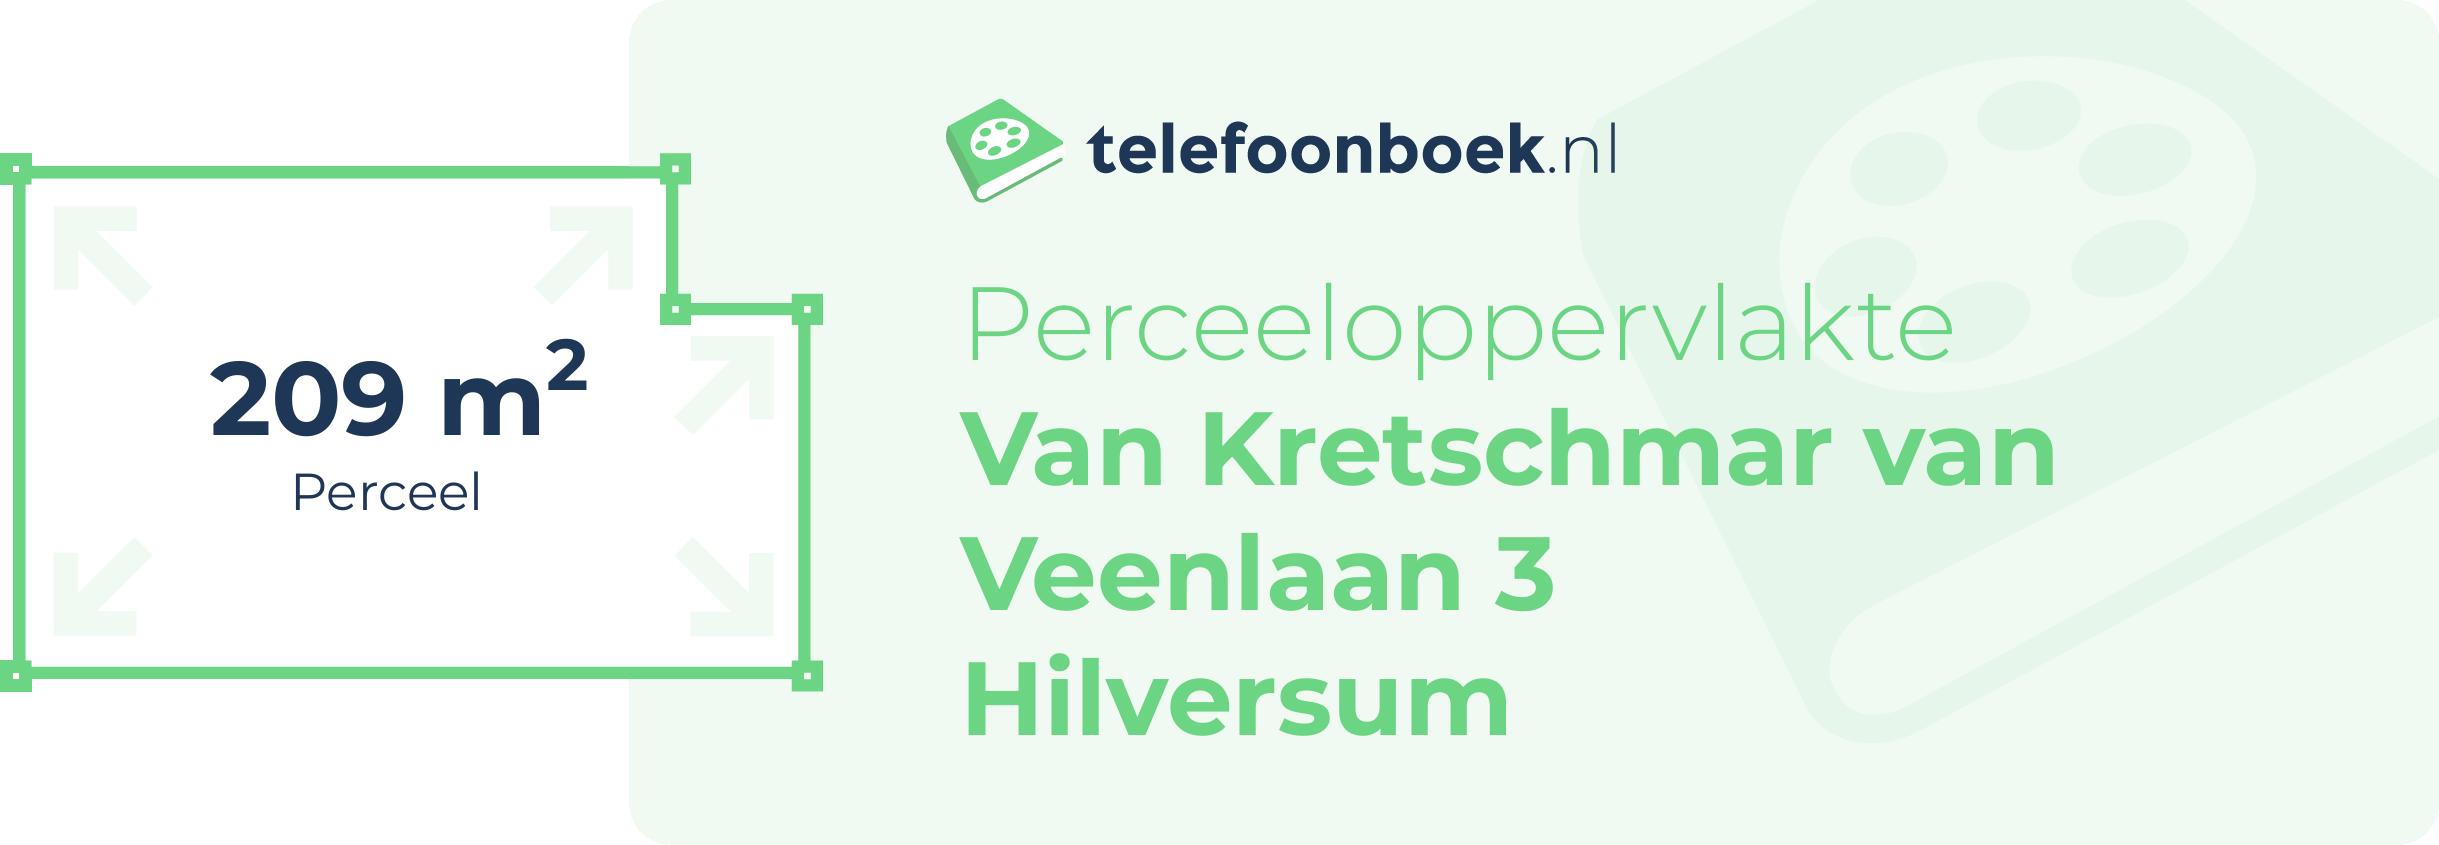 Perceeloppervlakte Van Kretschmar Van Veenlaan 3 Hilversum